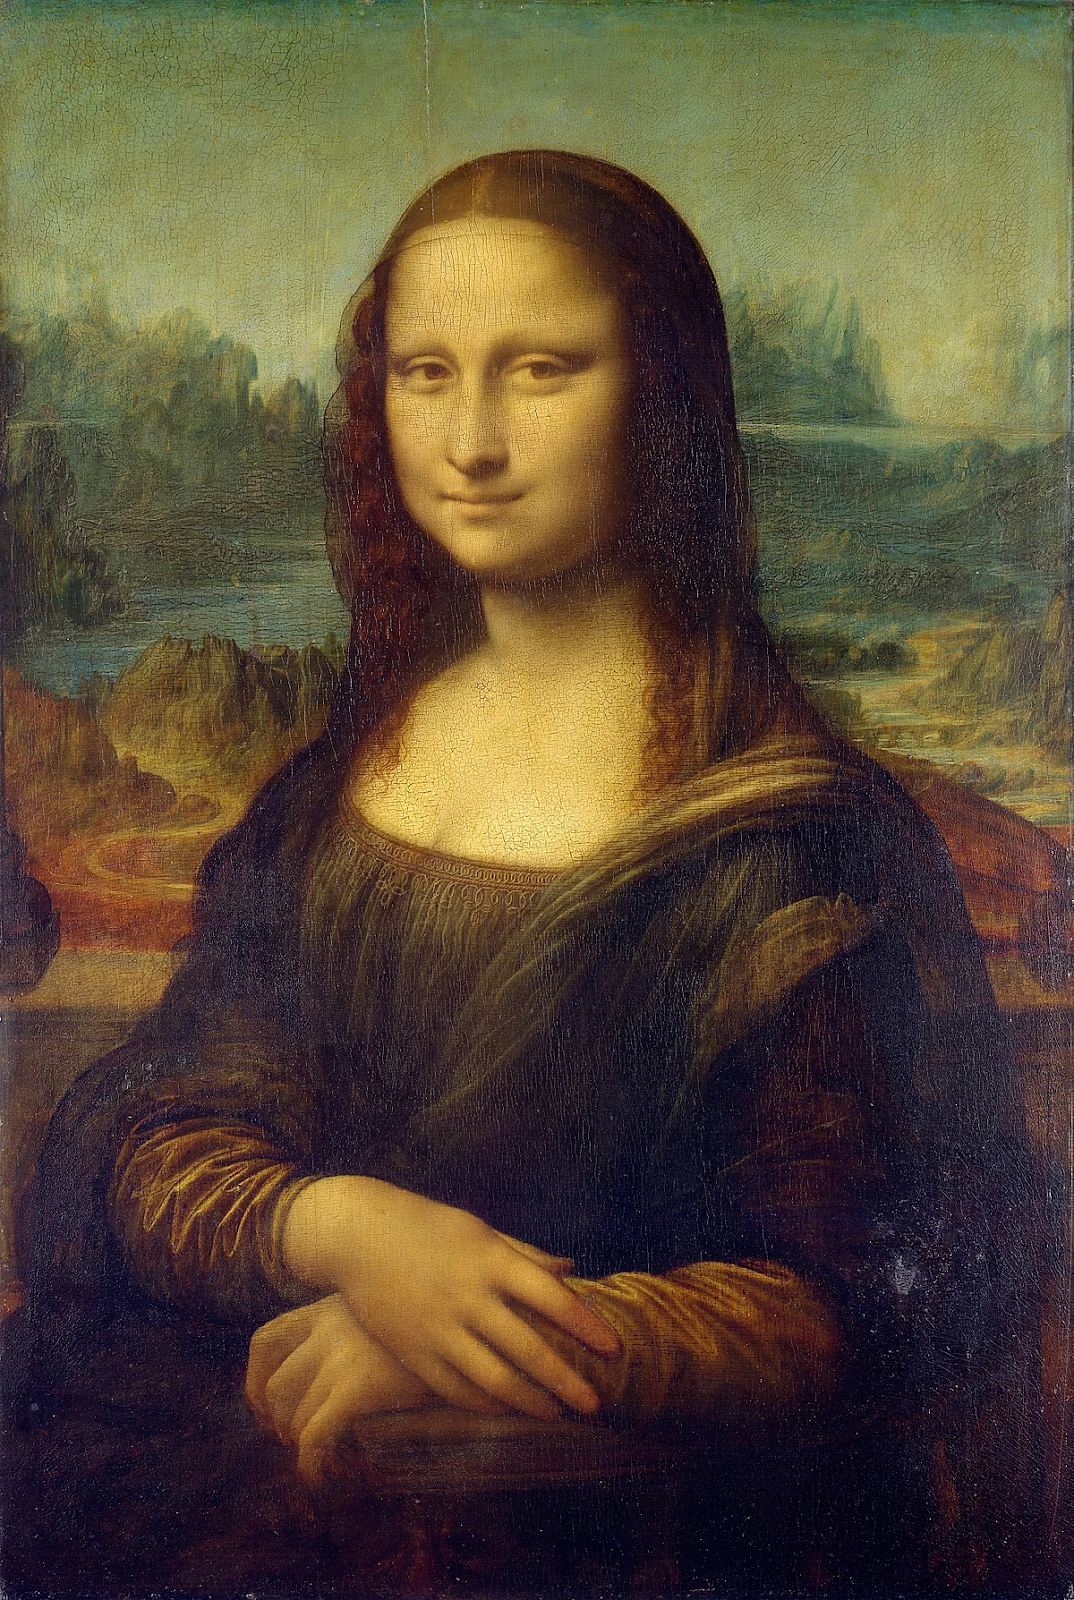 ViMoney: NFT là gì? Cùng tìm hiểu về NFT và kỷ nguyên mới trong thế giới nghệ thuật kỹ thuật số - Tác phẩm Mona Lisa của danh họa Leonardo Da Vinci